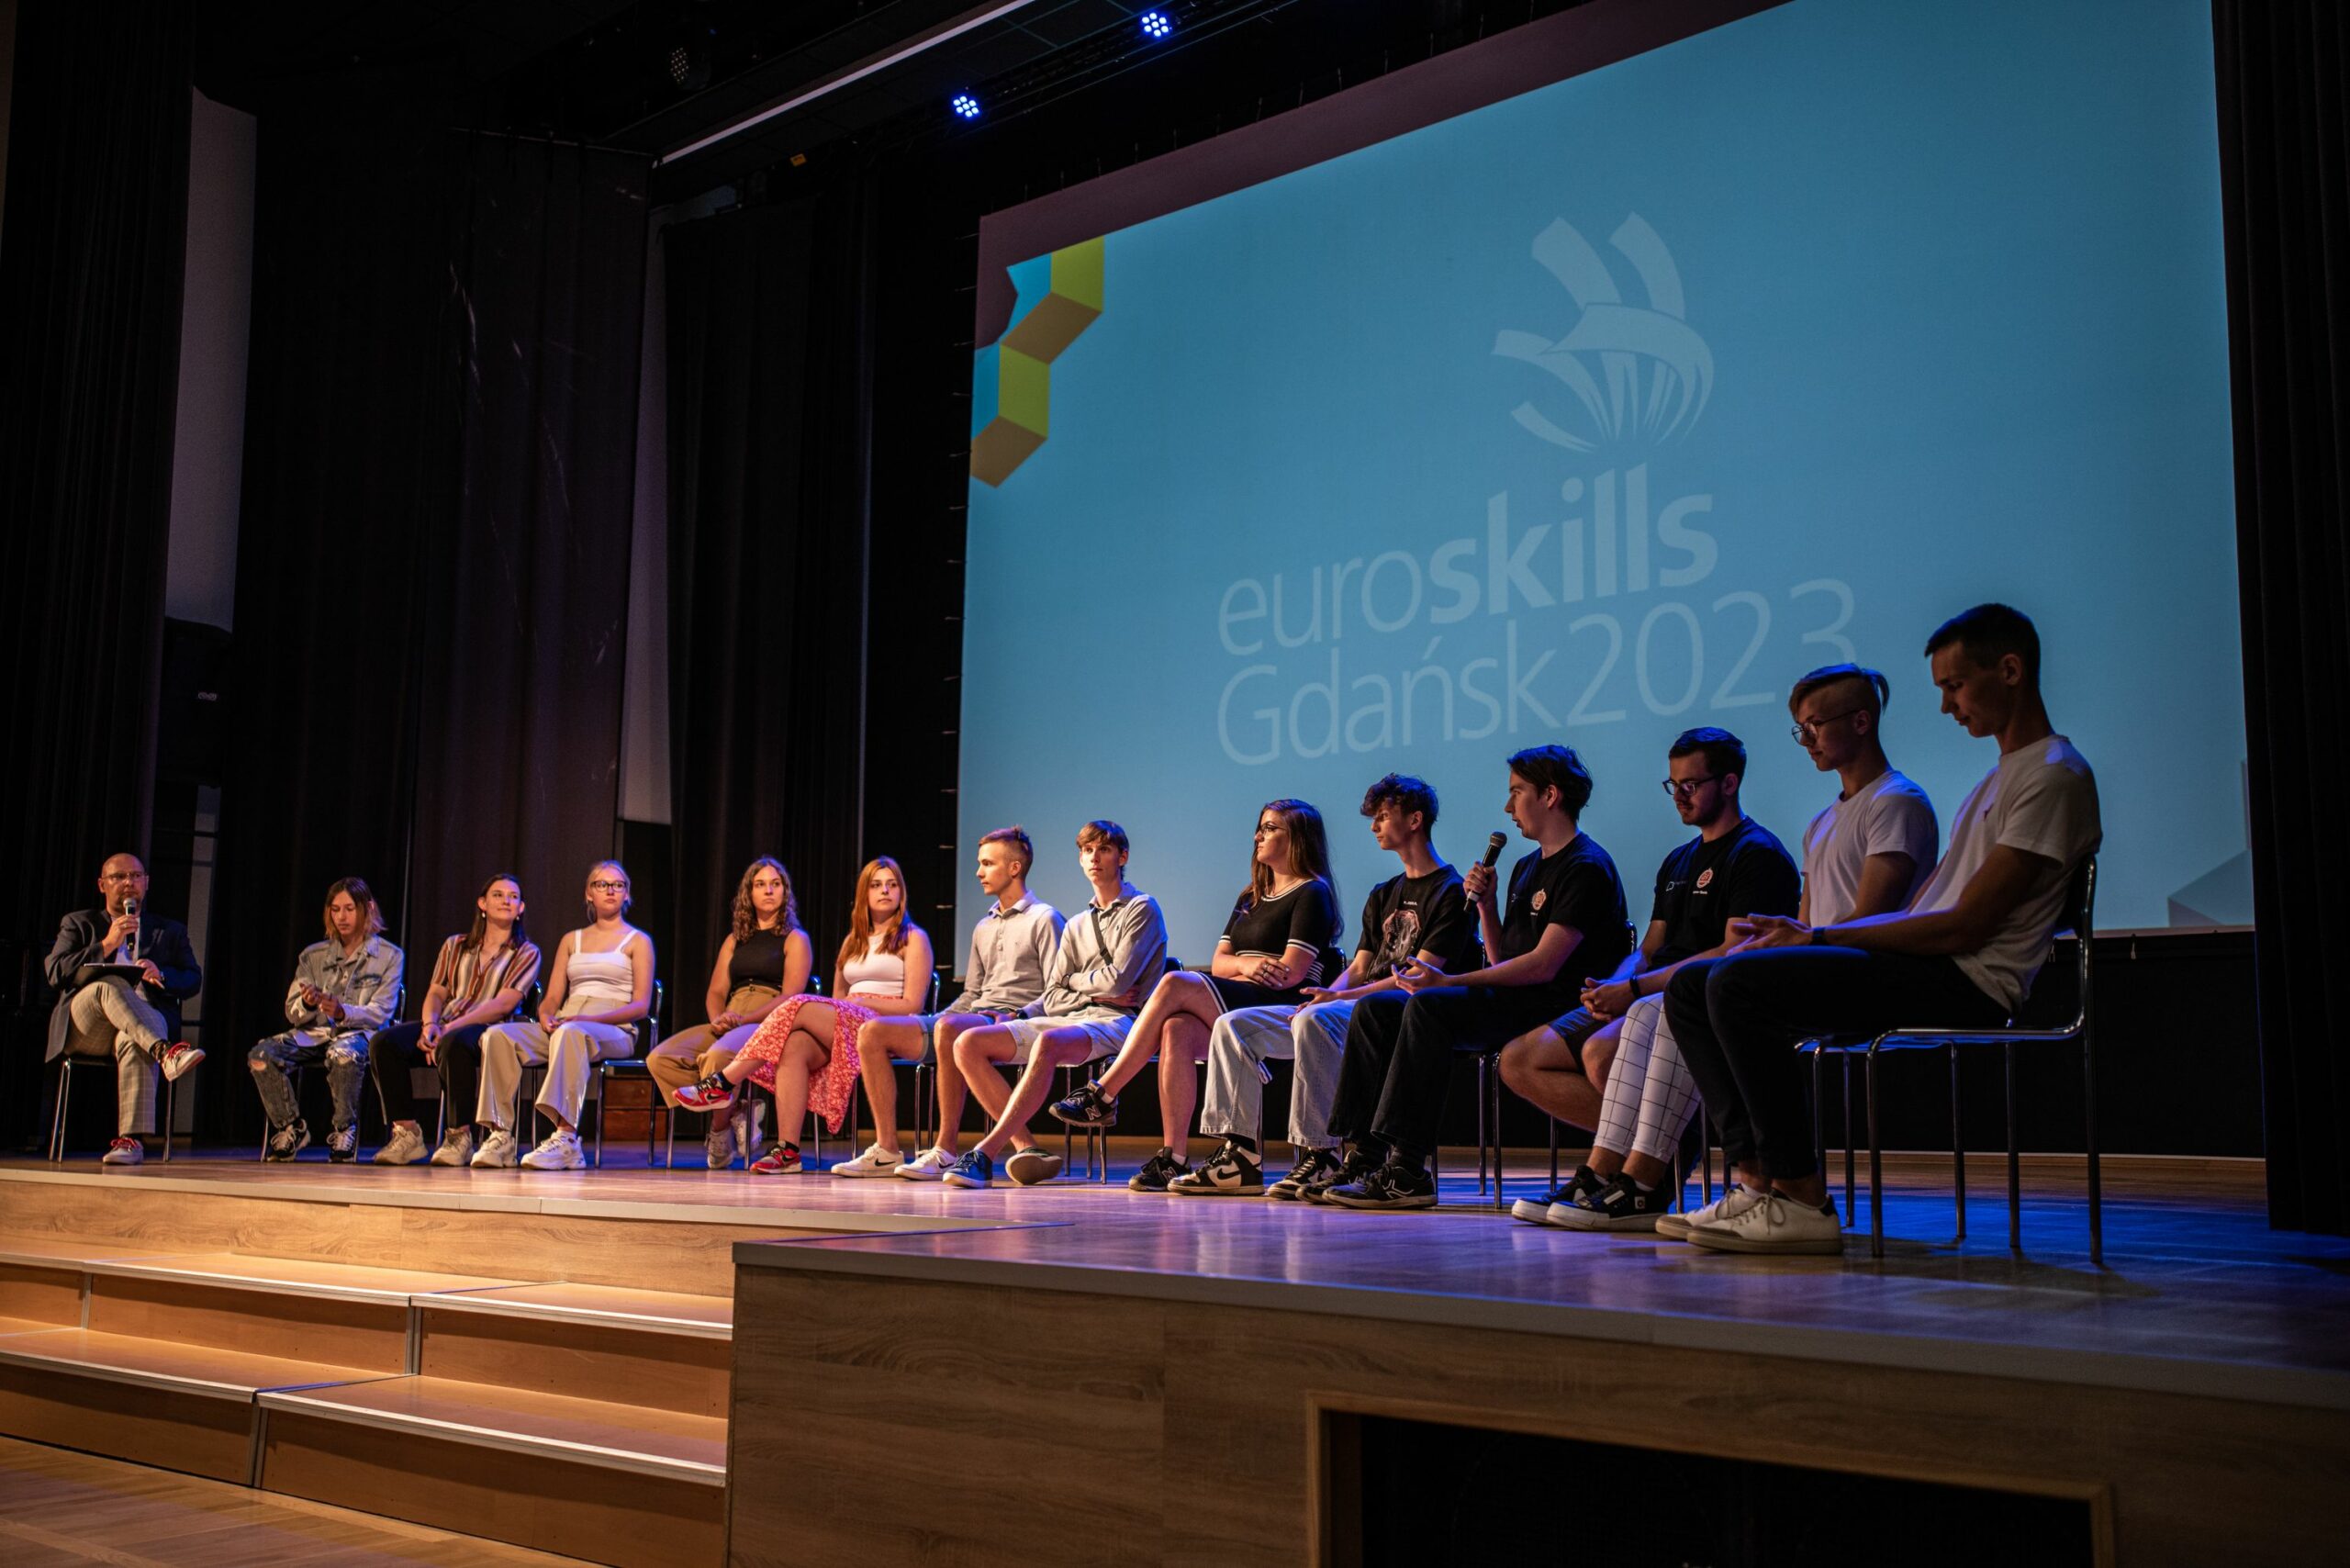 Młodzież na scenie przed dużym ekranem wyświetlającym napis EuroSkills Gdańsk2023.